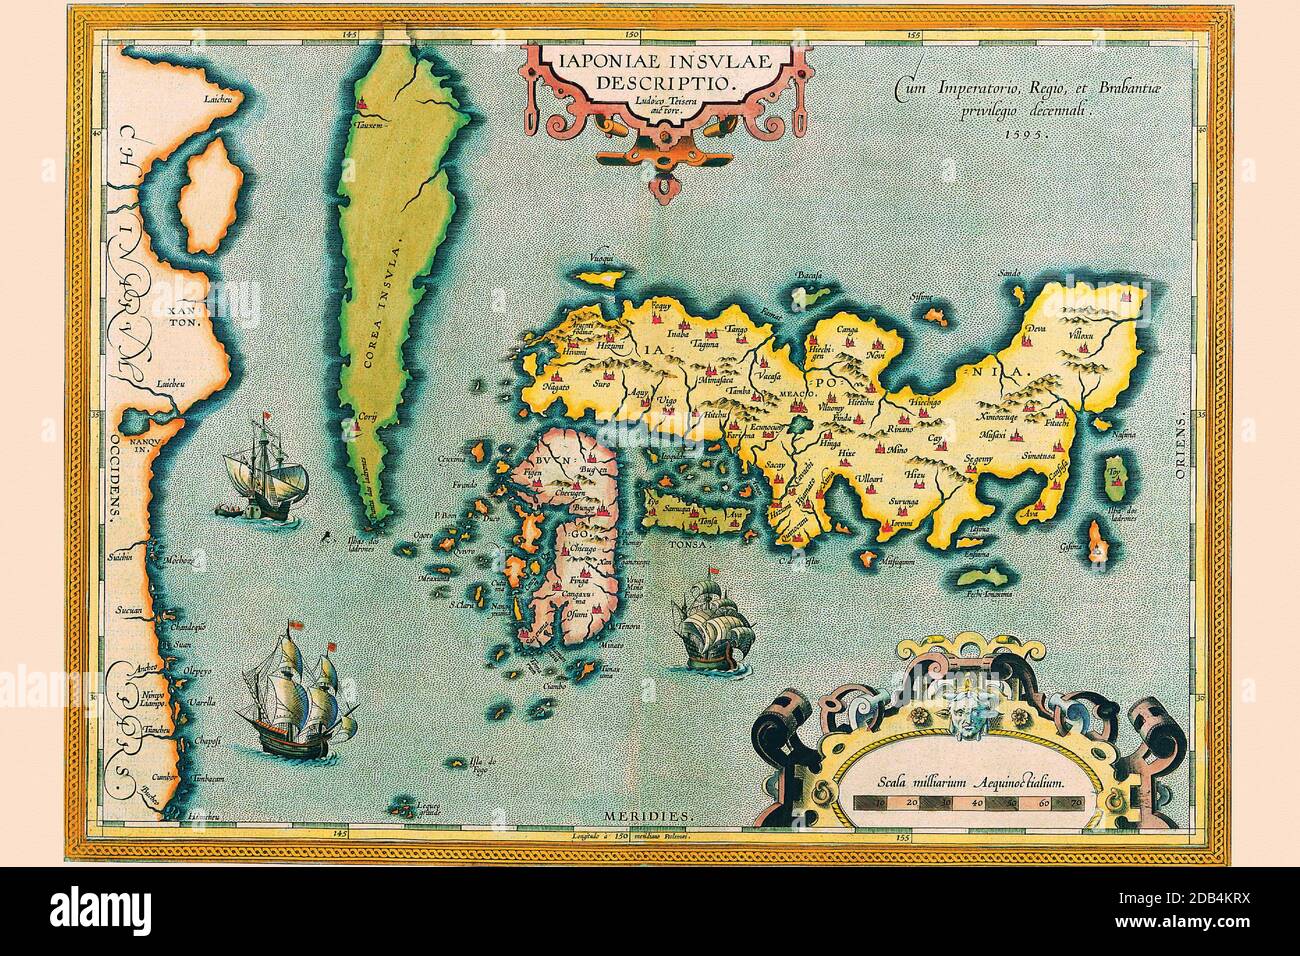 'Abraham Ortelius (Abraham Ortels) (14. April 1527 ? 28. Juni 1598) war ein flämischer Kartograph und Geograph, allgemein anerkannt als Schöpfer des ersten modernen Atlas, des Theatrum Orbis Terrarum (Theater der Welt). Er wird auch geglaubt, um die erste Person zu sein, die sich vorstellt, dass die Kontinente zusammengeschlossen wurden, bevor sie zu ihren gegenwärtigen Positionen driftten. 1564 vollendete er eine 'Appemonde', achtblättrige Weltkarte, die später in reduzierter Form im Theatrum erschien. Die einzige erhaltene Kopie dieser großartigen Karte befindet sich in der Bibliothek der Universität Basel. Am 20. Mai 1570, Gilles Stockfoto